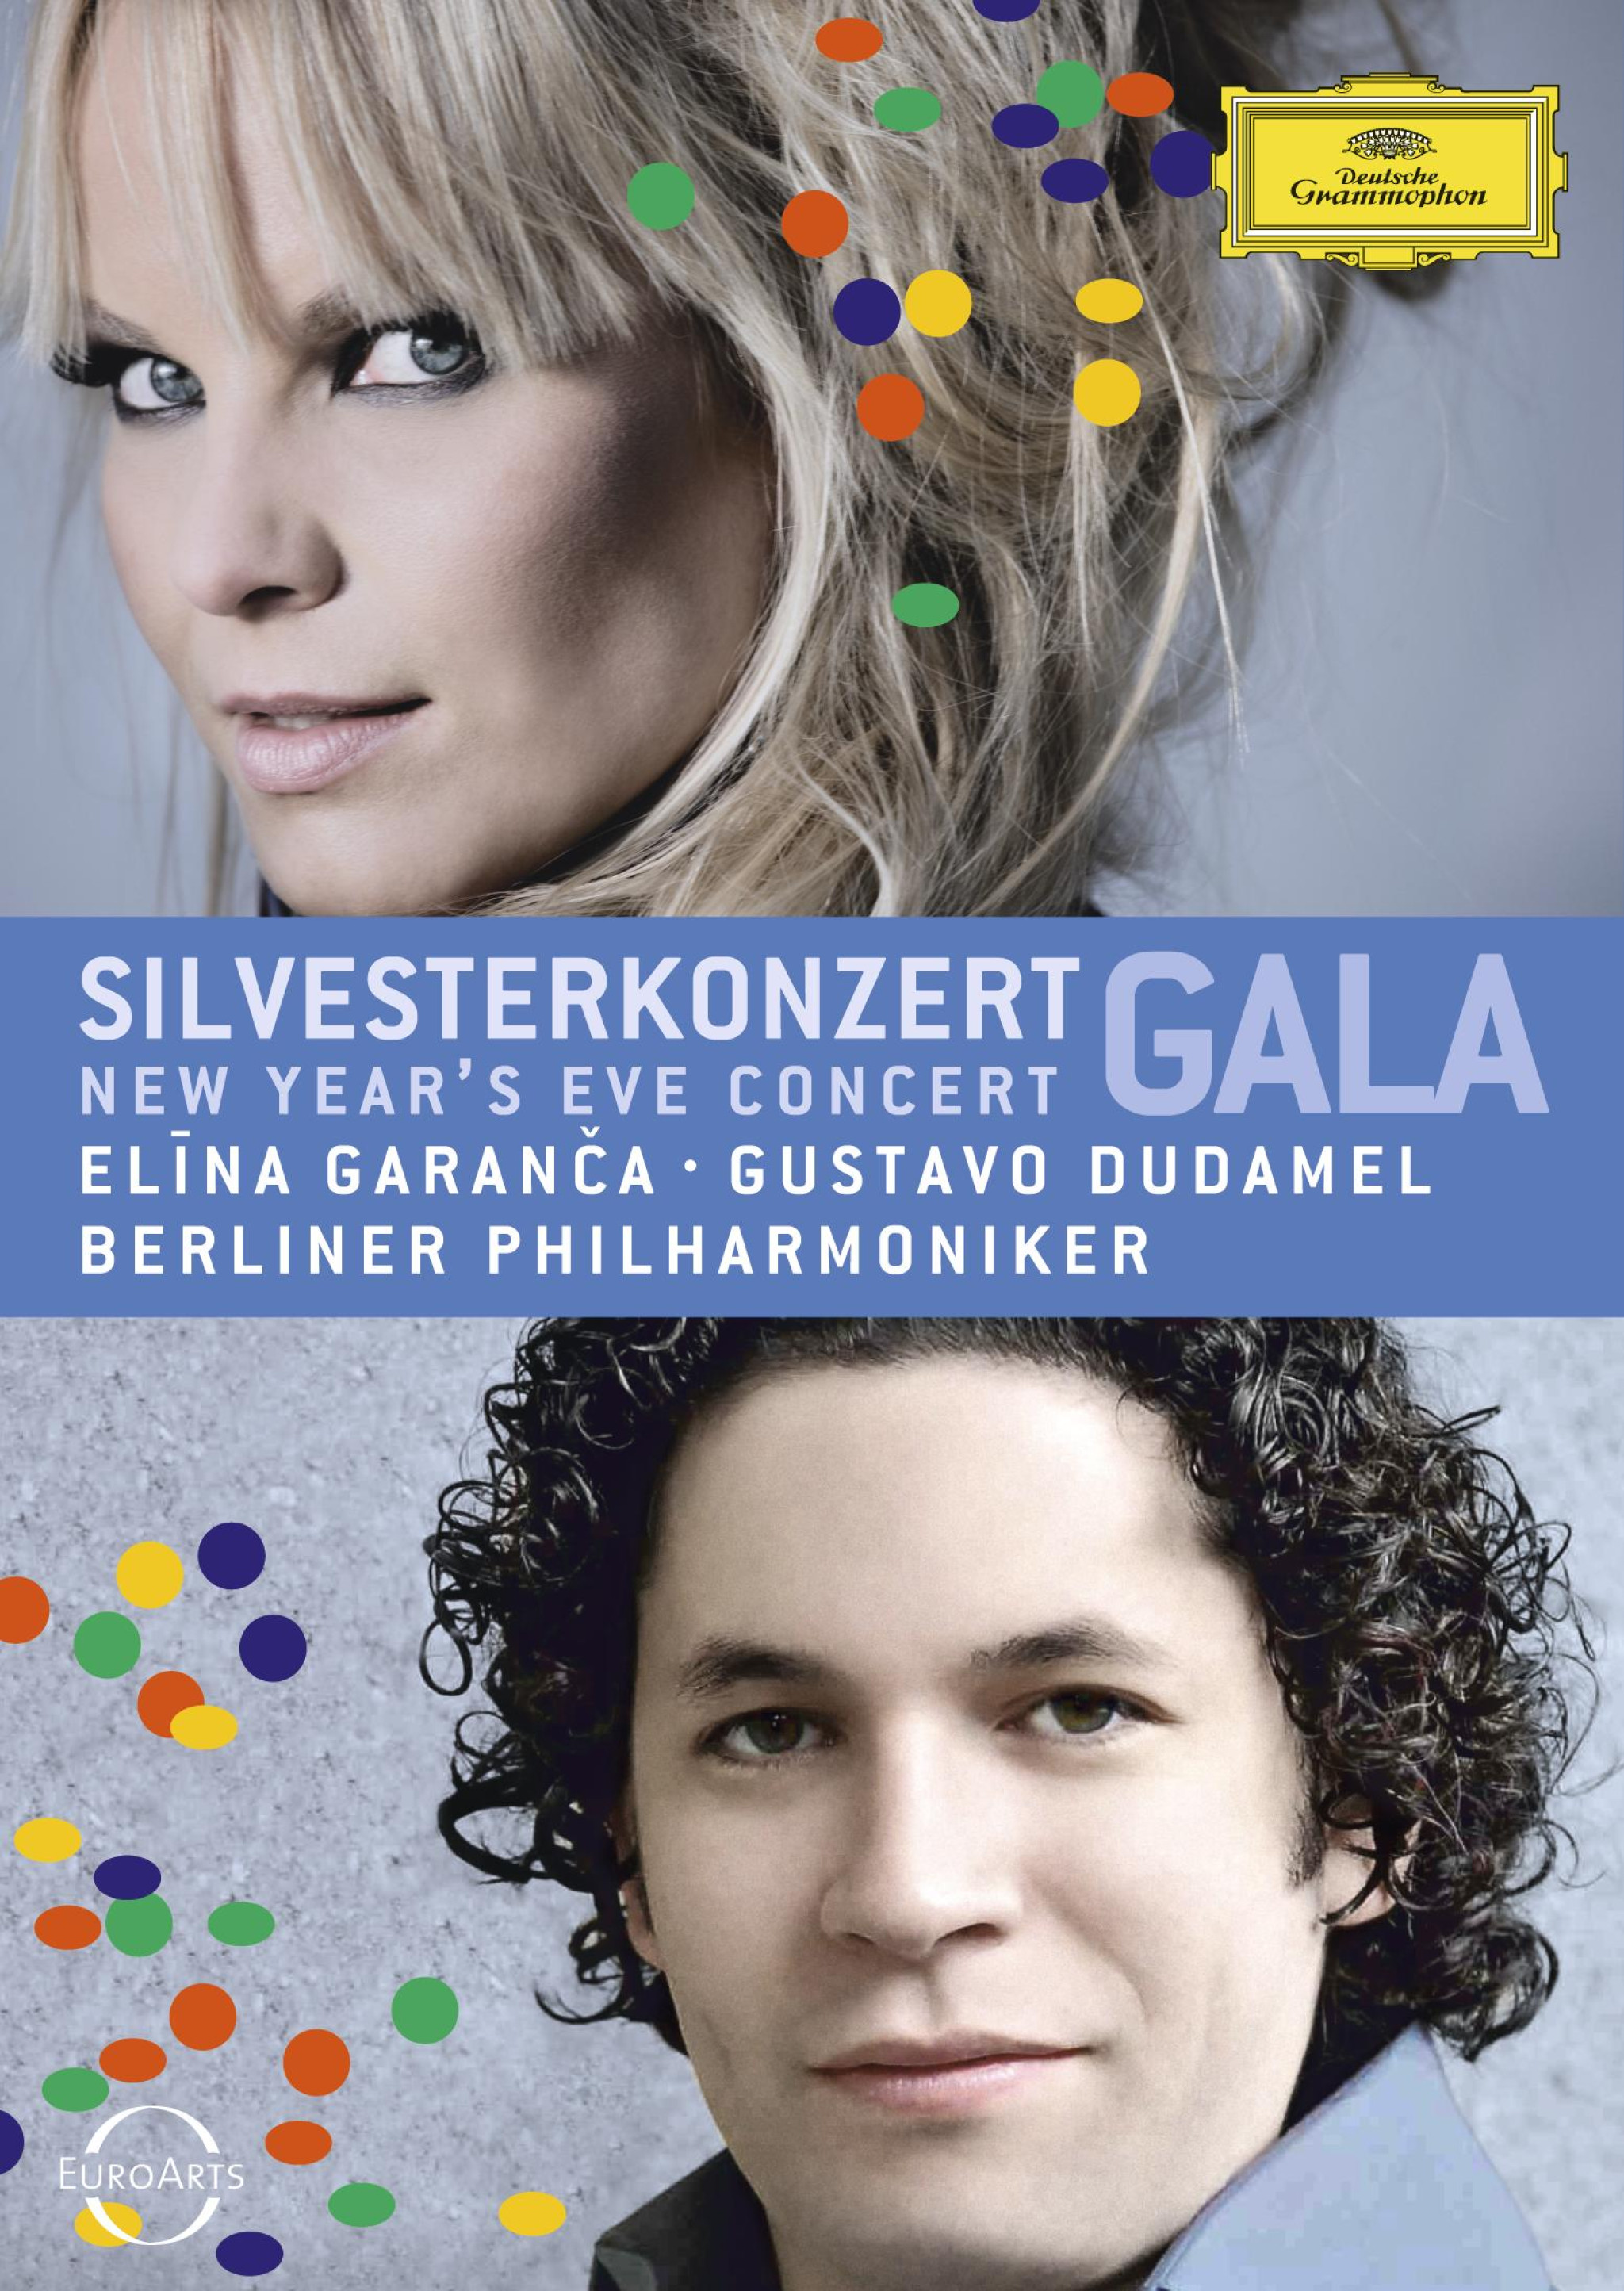 Silvesterkonzert - New Year's Eve Concert 2010